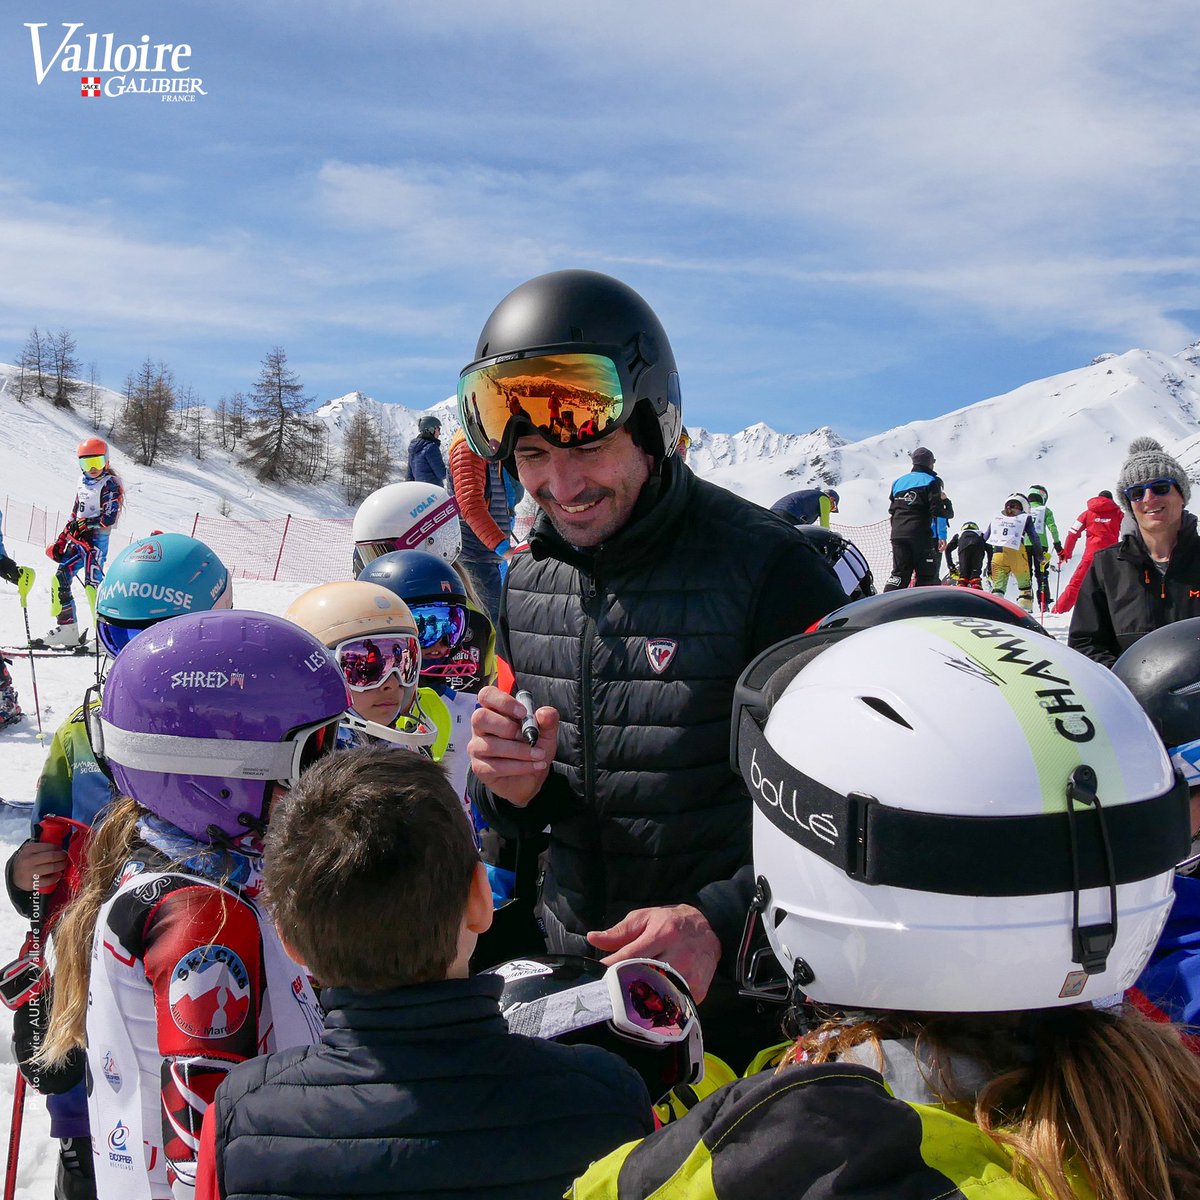 Jb Cup 2024 ❄️☀️ La course et la fête des jeunes skieurs avec Jean-Baptiste Grange ⛷️✨ Tradition respectée ce samedi ! De magnifiques conditions pour cette 13e édition 🤗 #Valloire #Galibier #ski #jbgrange